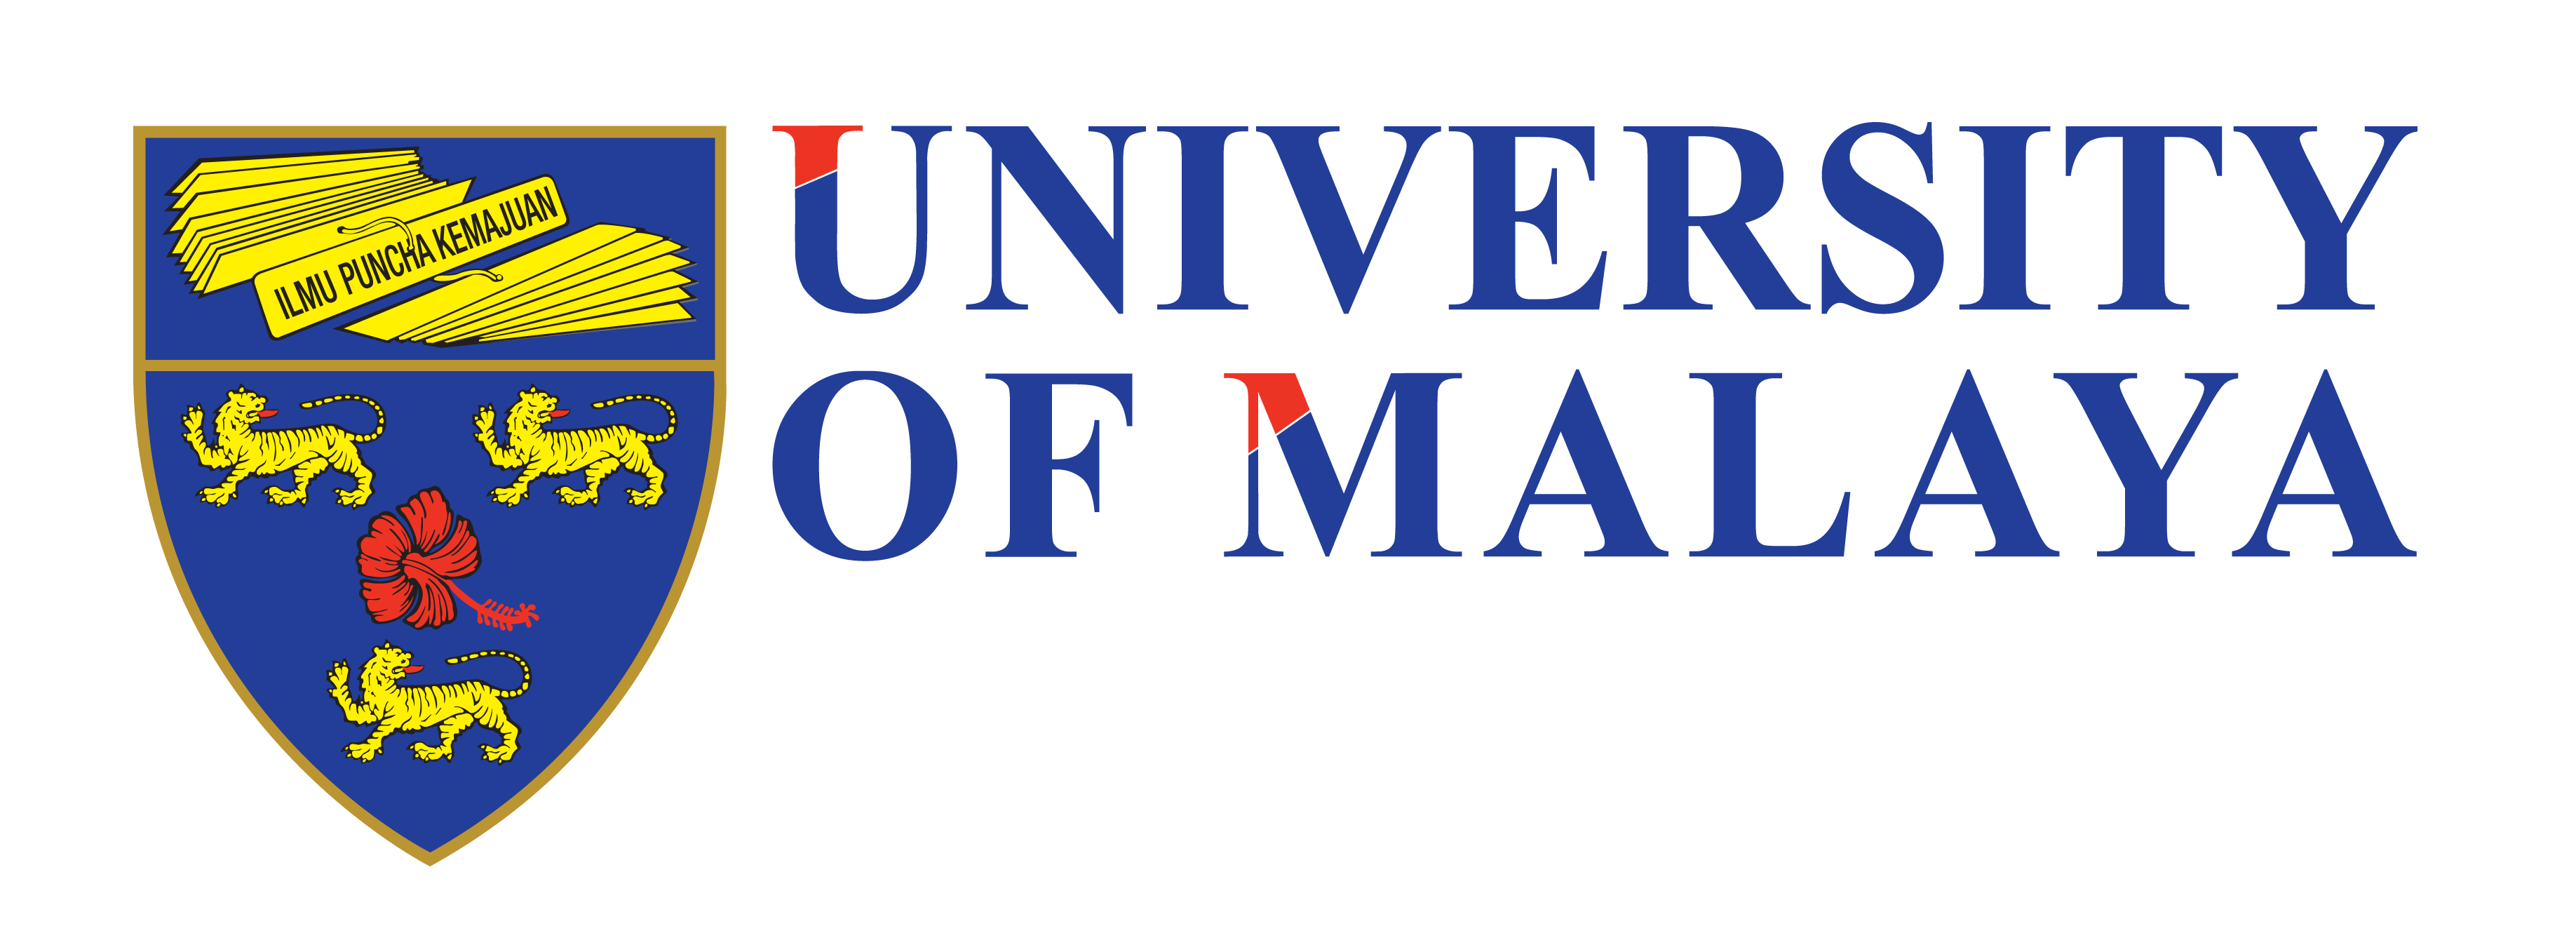 Univeriti of Malaya